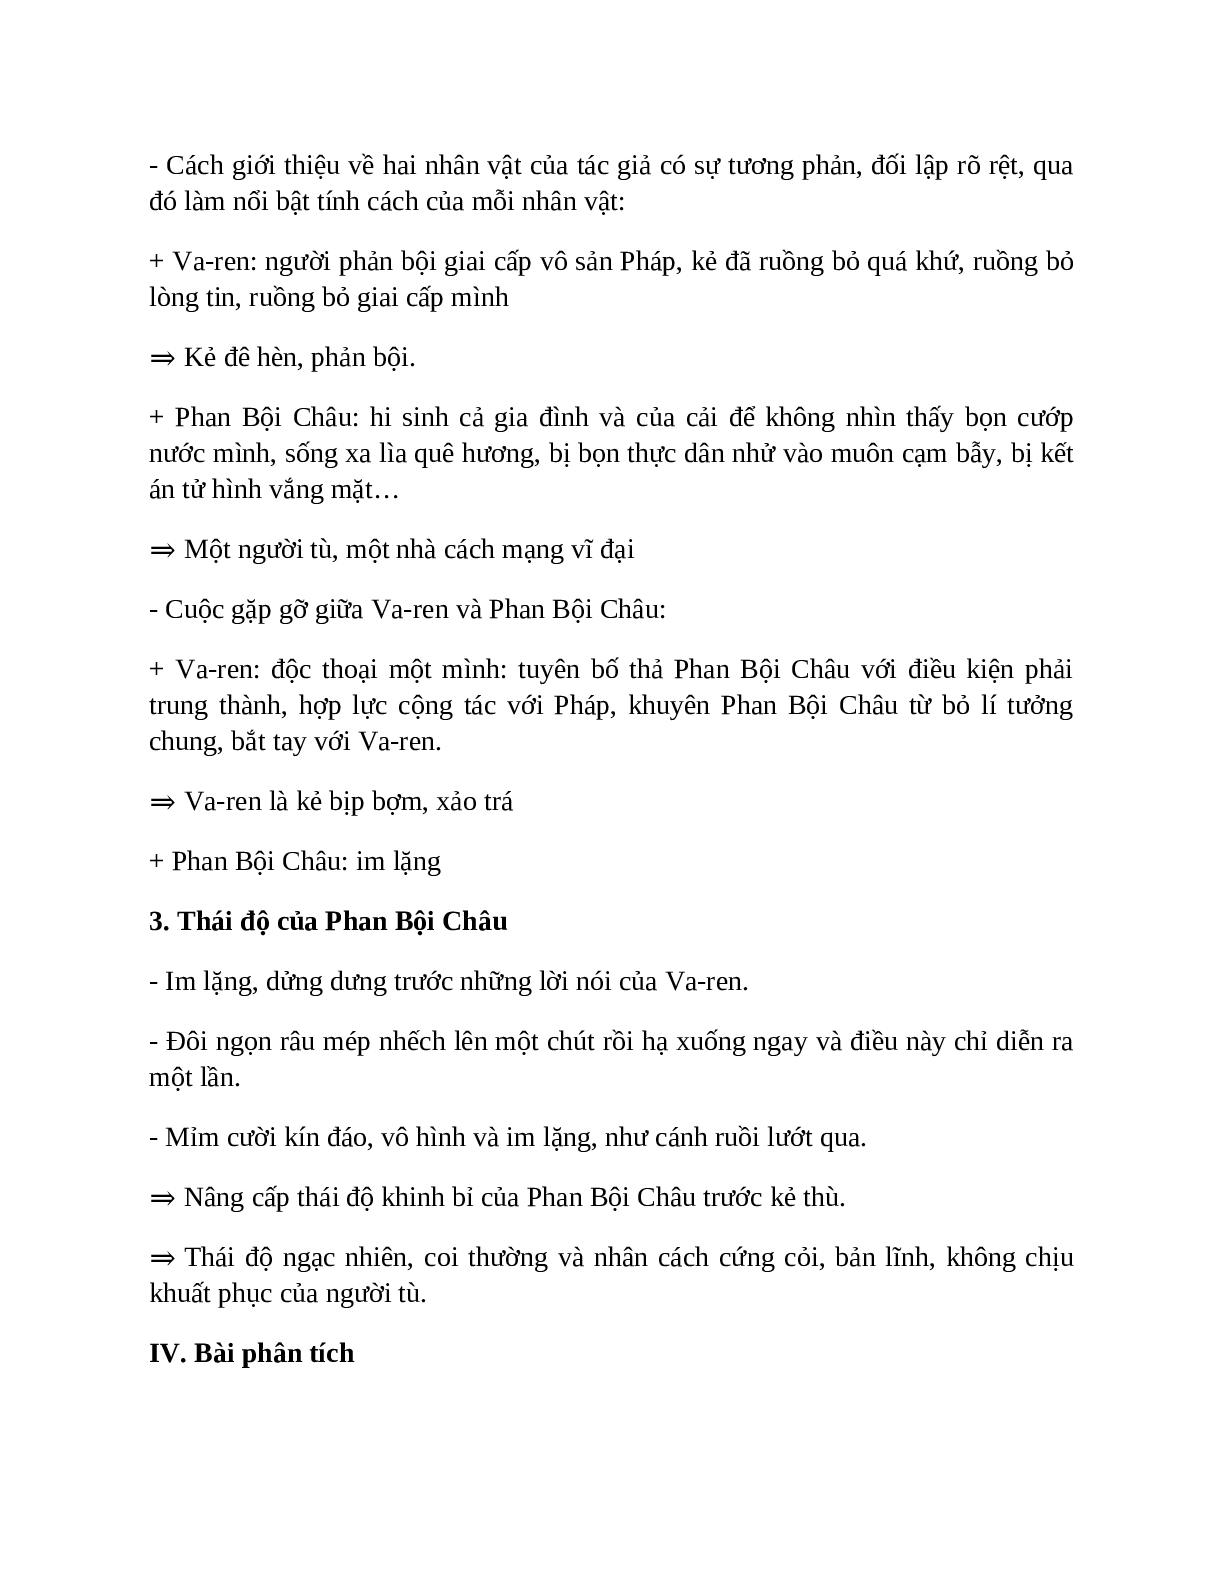 Sơ đồ tư duy bài Những trò lố hay là Varen và Phan Bội Châu dễ nhớ, ngắn nhất - Ngữ văn lớp 7 (trang 4)